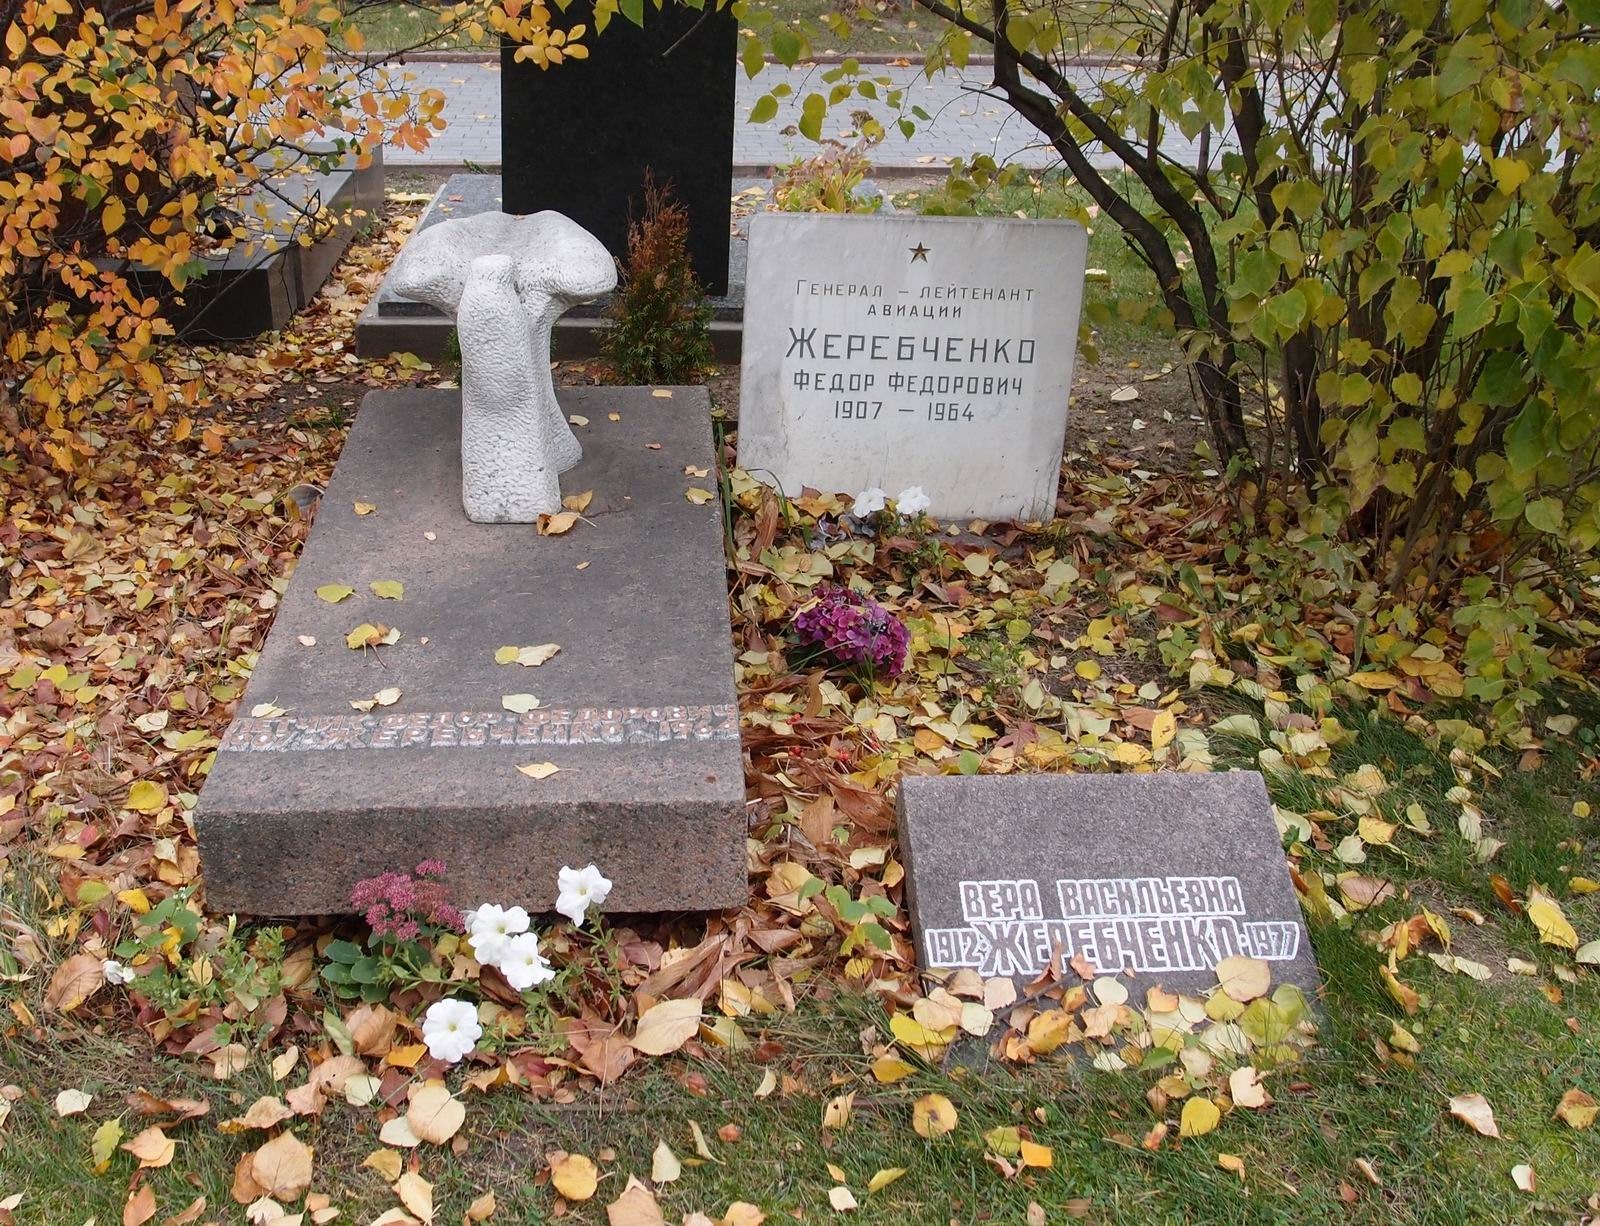 Памятник на могиле Жеребченко Ф.Ф. (1907-1964), ск. О.Комов, арх. Ю.Гальперин, на Новодевичьем кладбище (6-7-1).